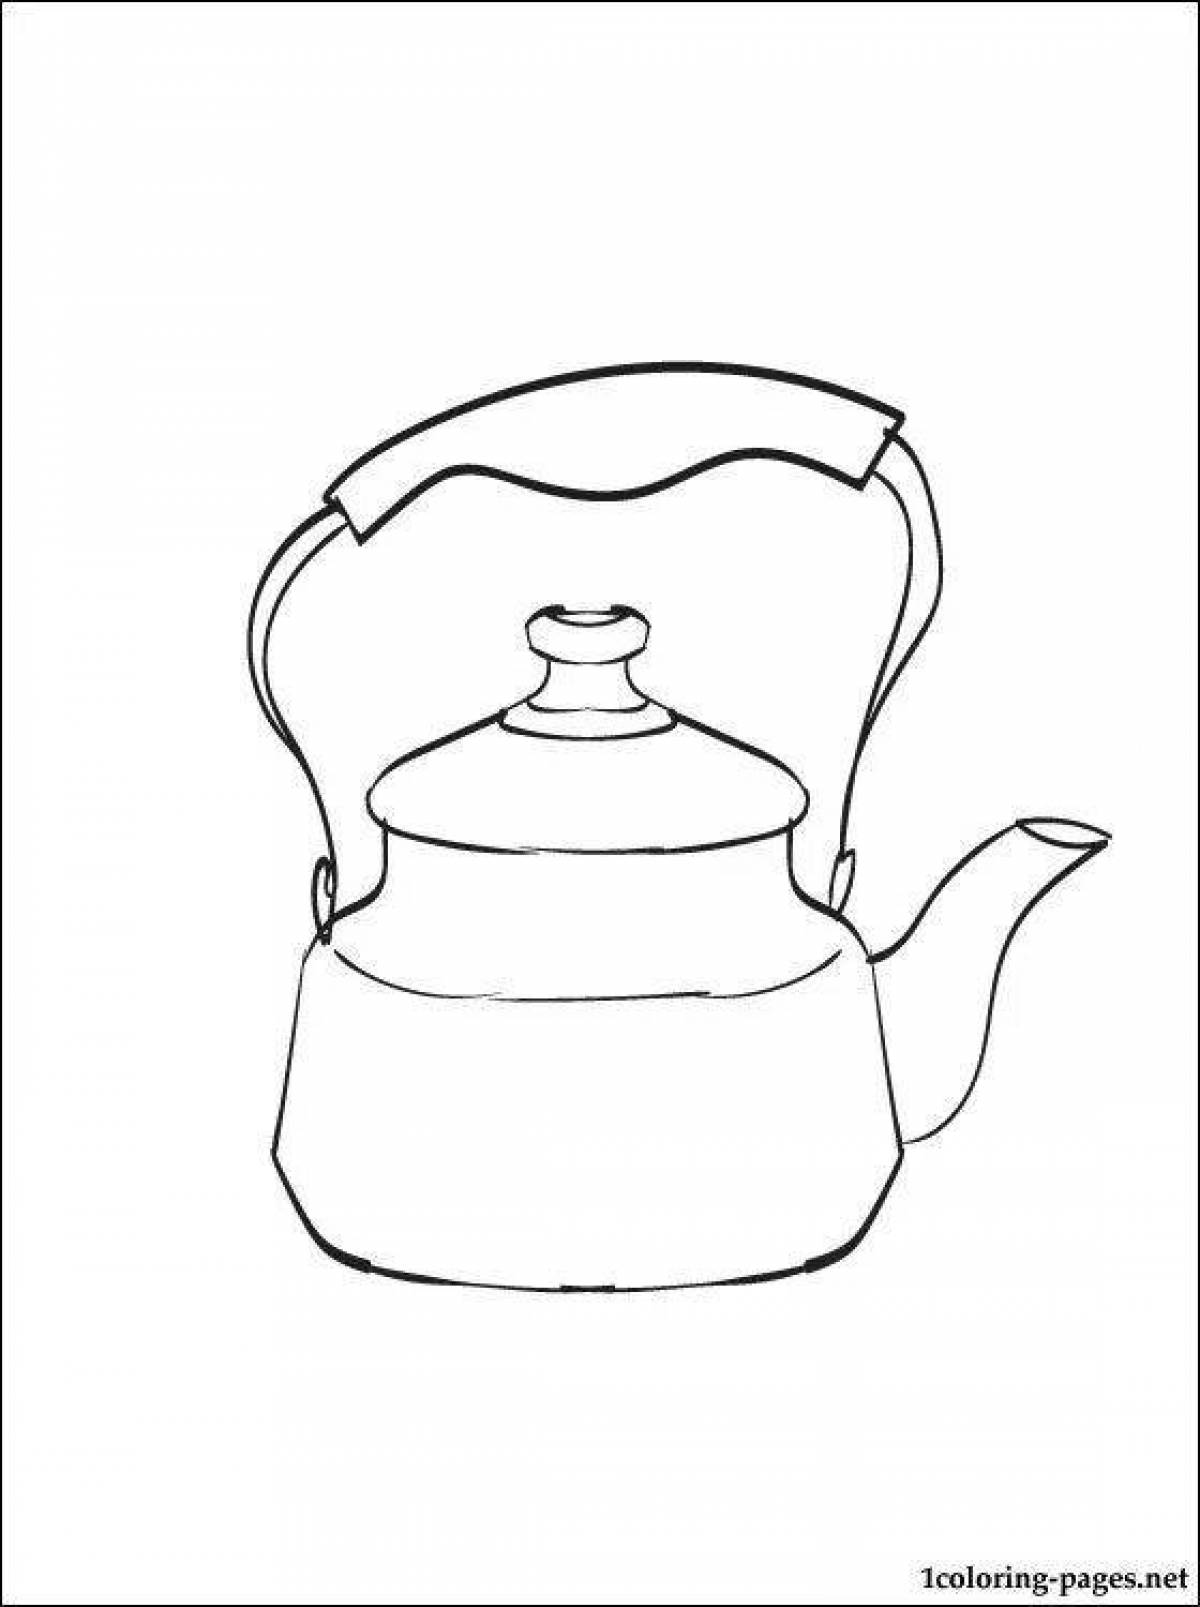 Раскраска традиционный чайник